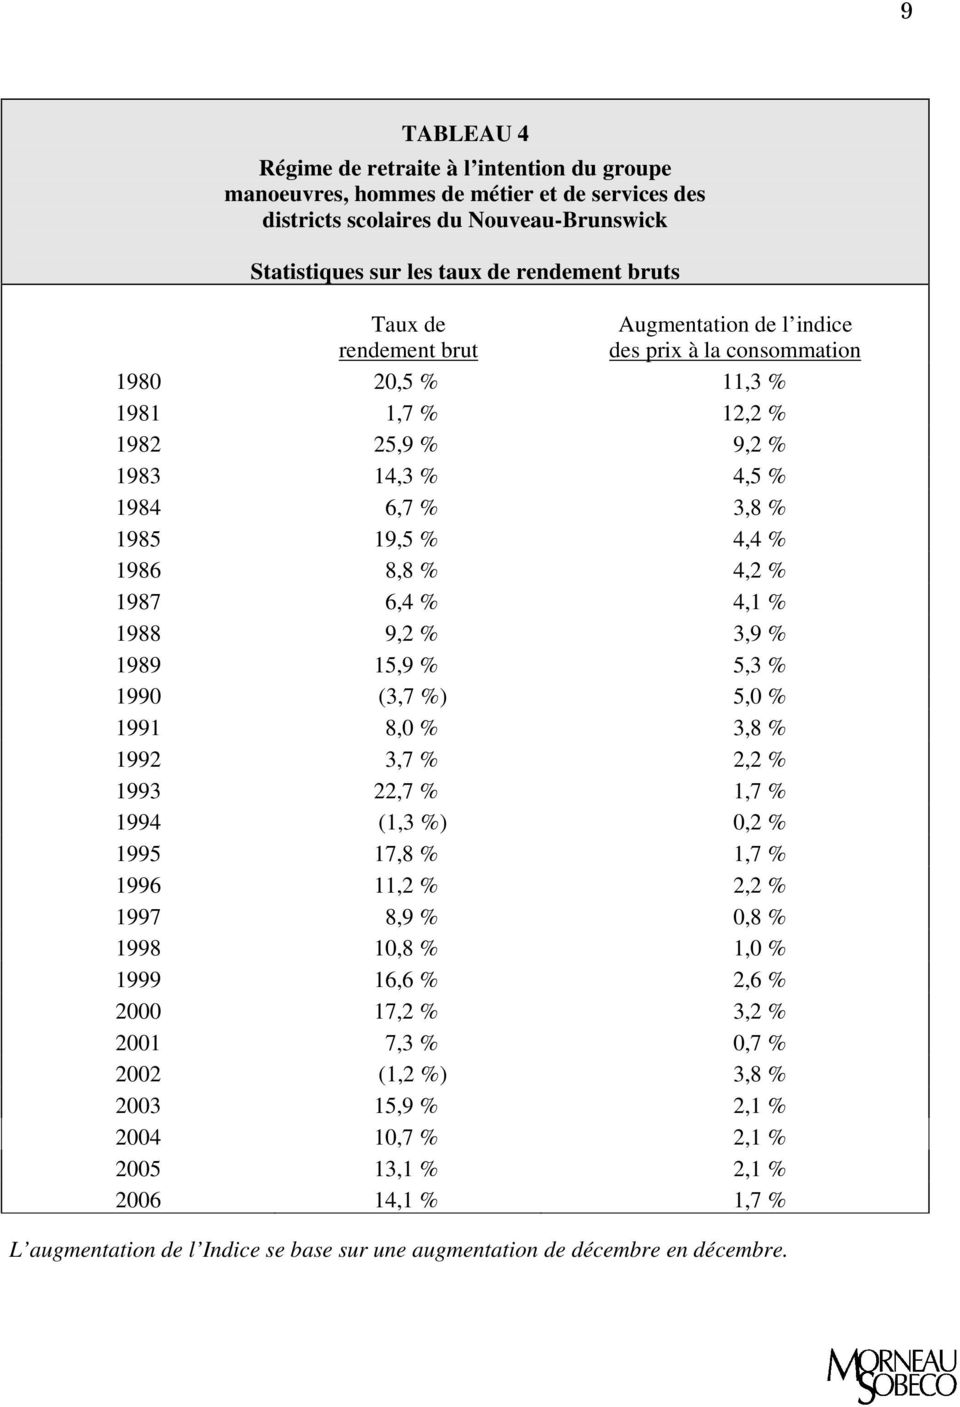 6,4 % 4,1 % 1988 9,2 % 3,9 % 1989 15,9 % 5,3 % 1990 (3,7 %) 5,0 % 1991 8,0 % 3,8 % 1992 3,7 % 2,2 % 1993 22,7 % 1,7 % 1994 (1,3 %) 0,2 % 1995 17,8 % 1,7 % 1996 11,2 % 2,2 % 1997 8,9 % 0,8 % 1998 10,8